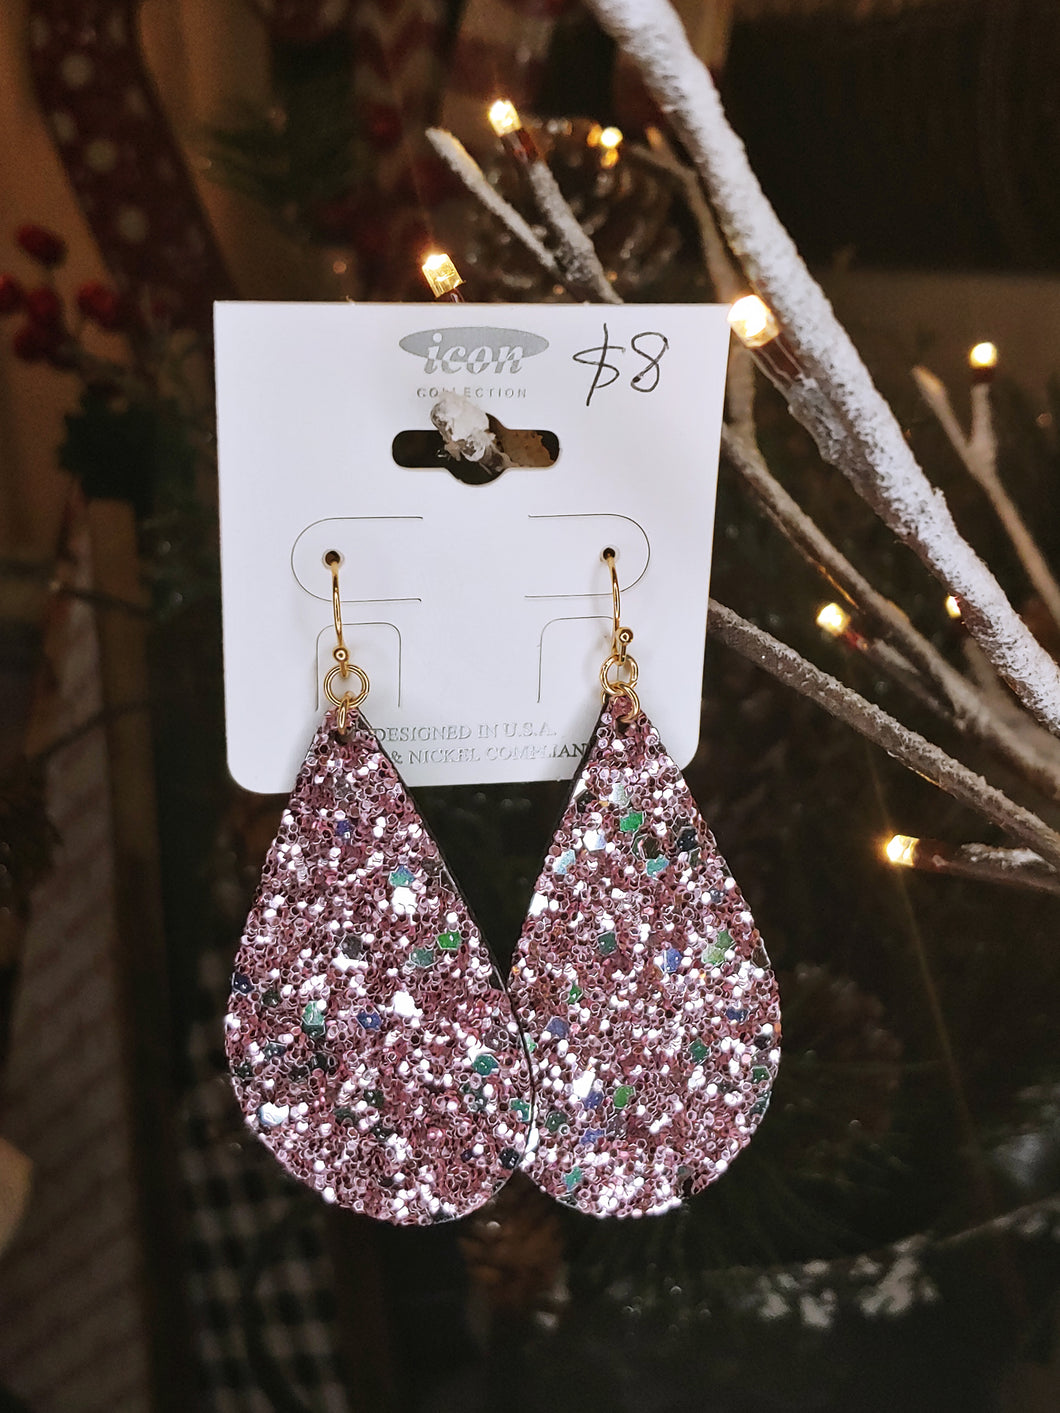 Lilac Glitter Faux Leather earrings